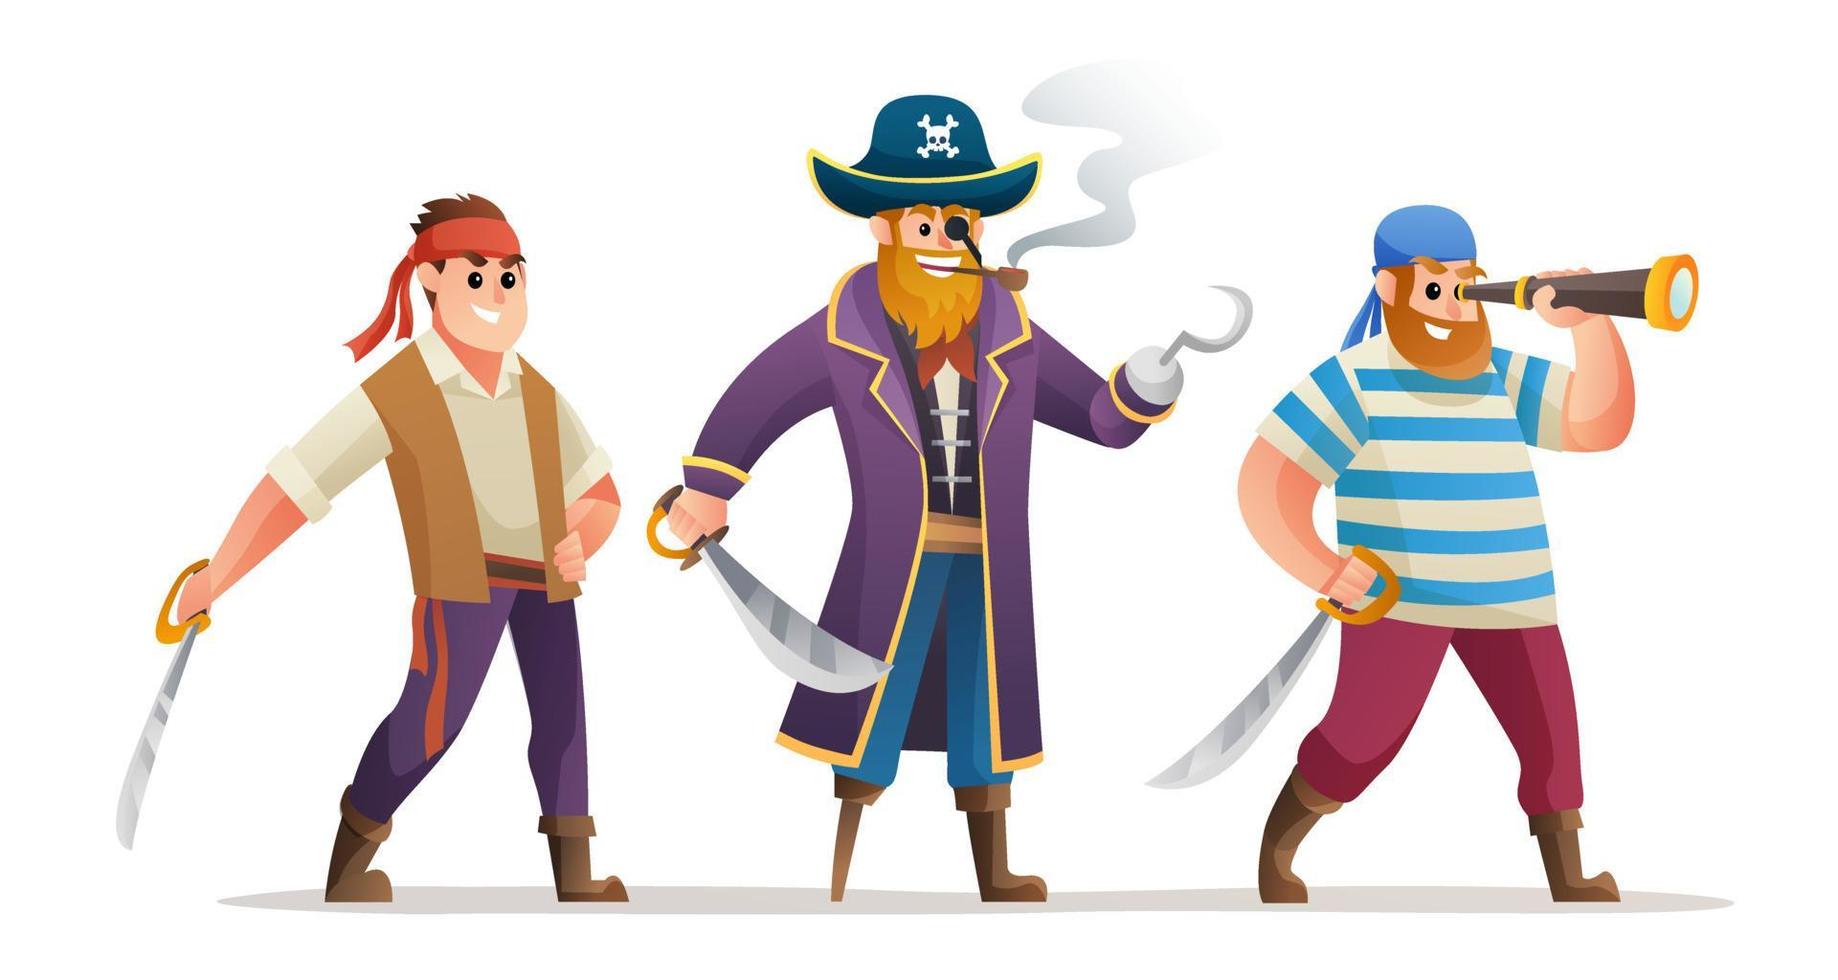 zeichentrickfigurensatz aus piratenkapitän und soldaten, die schwert halten vektor